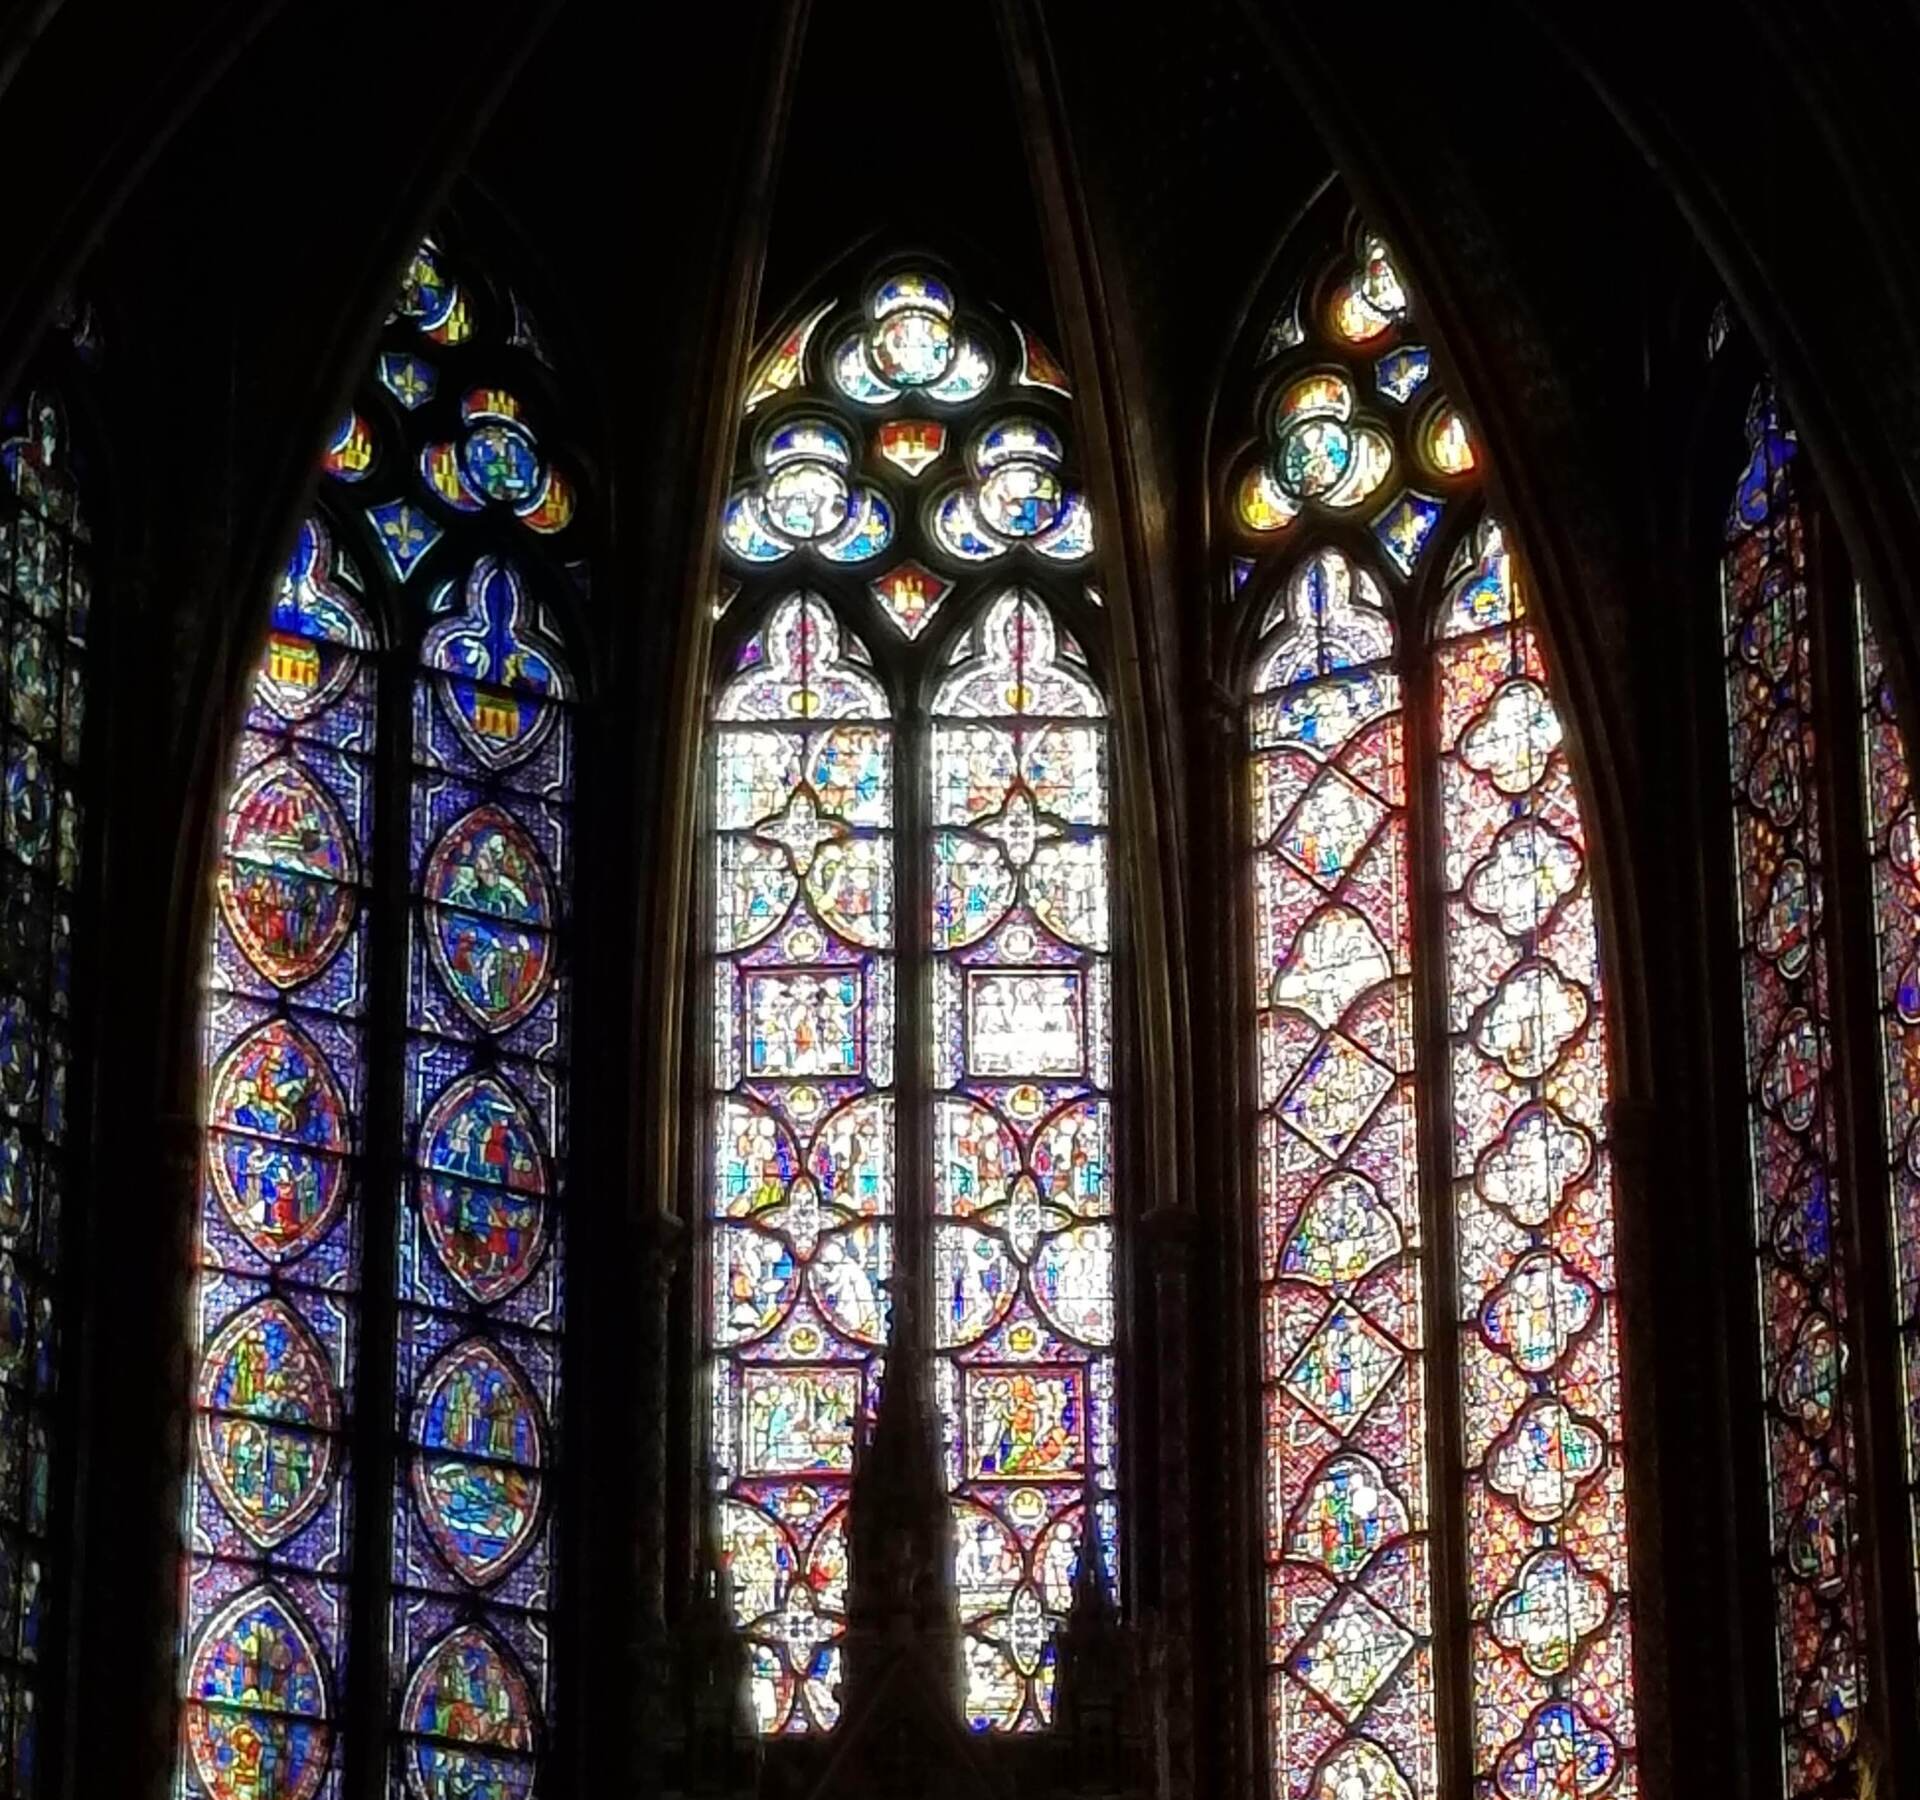 Sainte Chapelle Paris